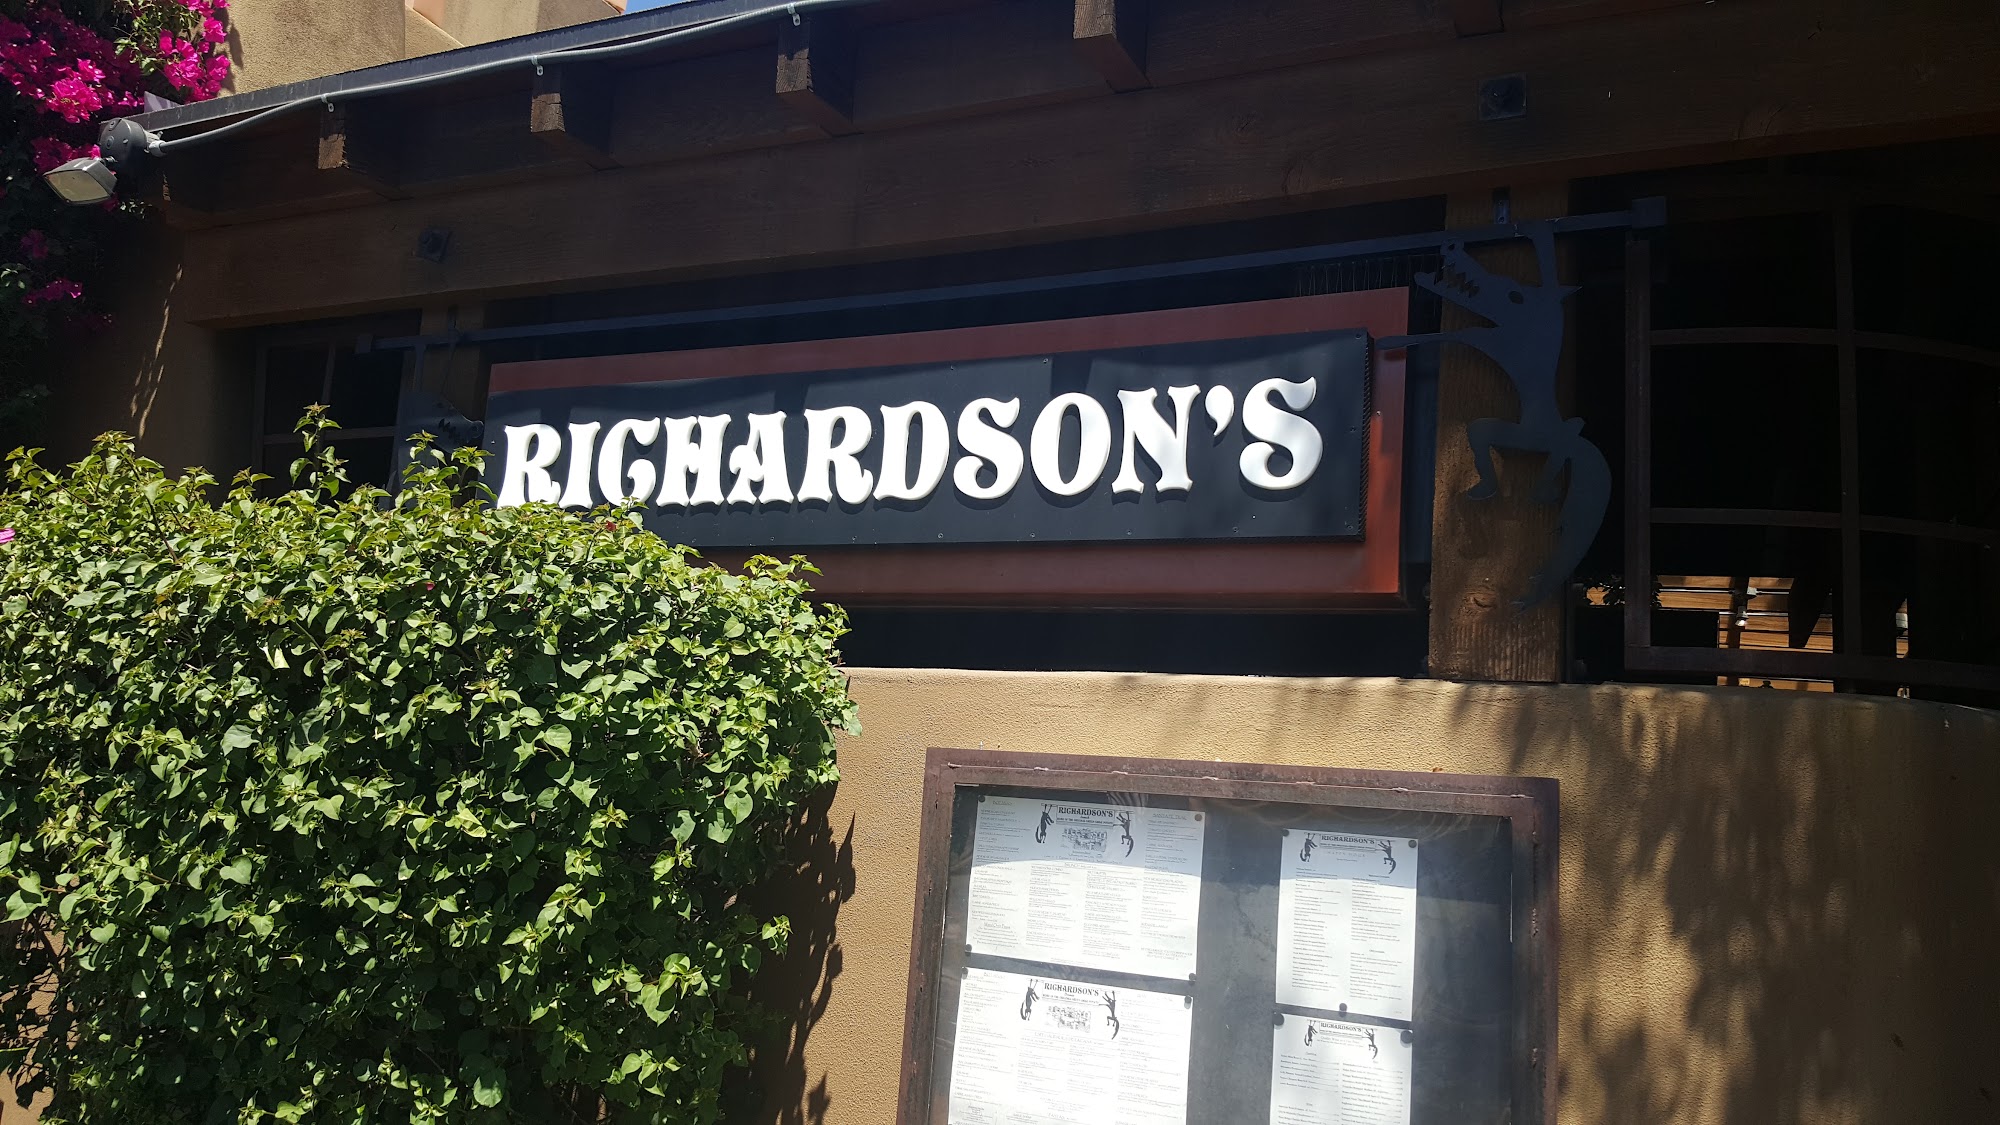 Richardson's Restaurant